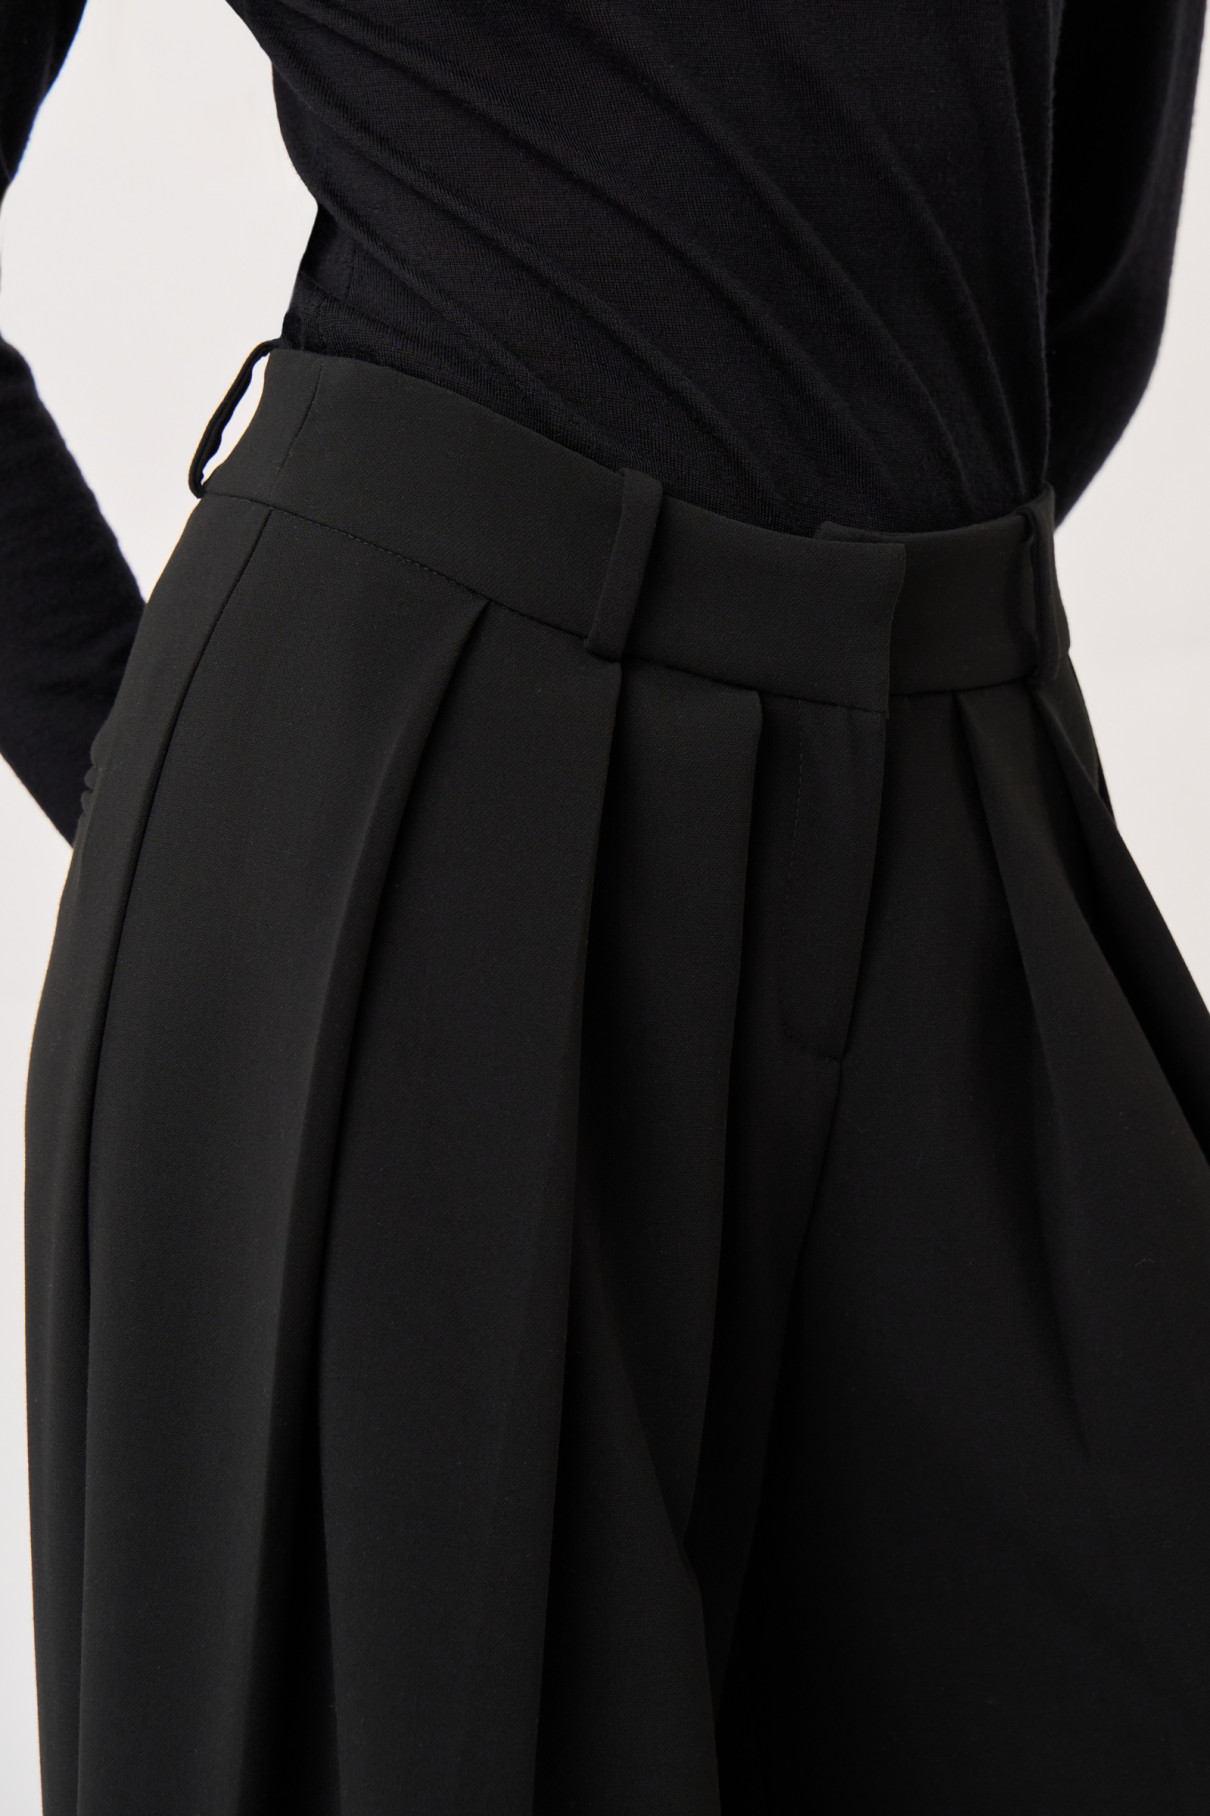 Черные брюки со складками , Чёрный, арт. FR21-ЧО-4-чр-4 купить в интернет-магазине